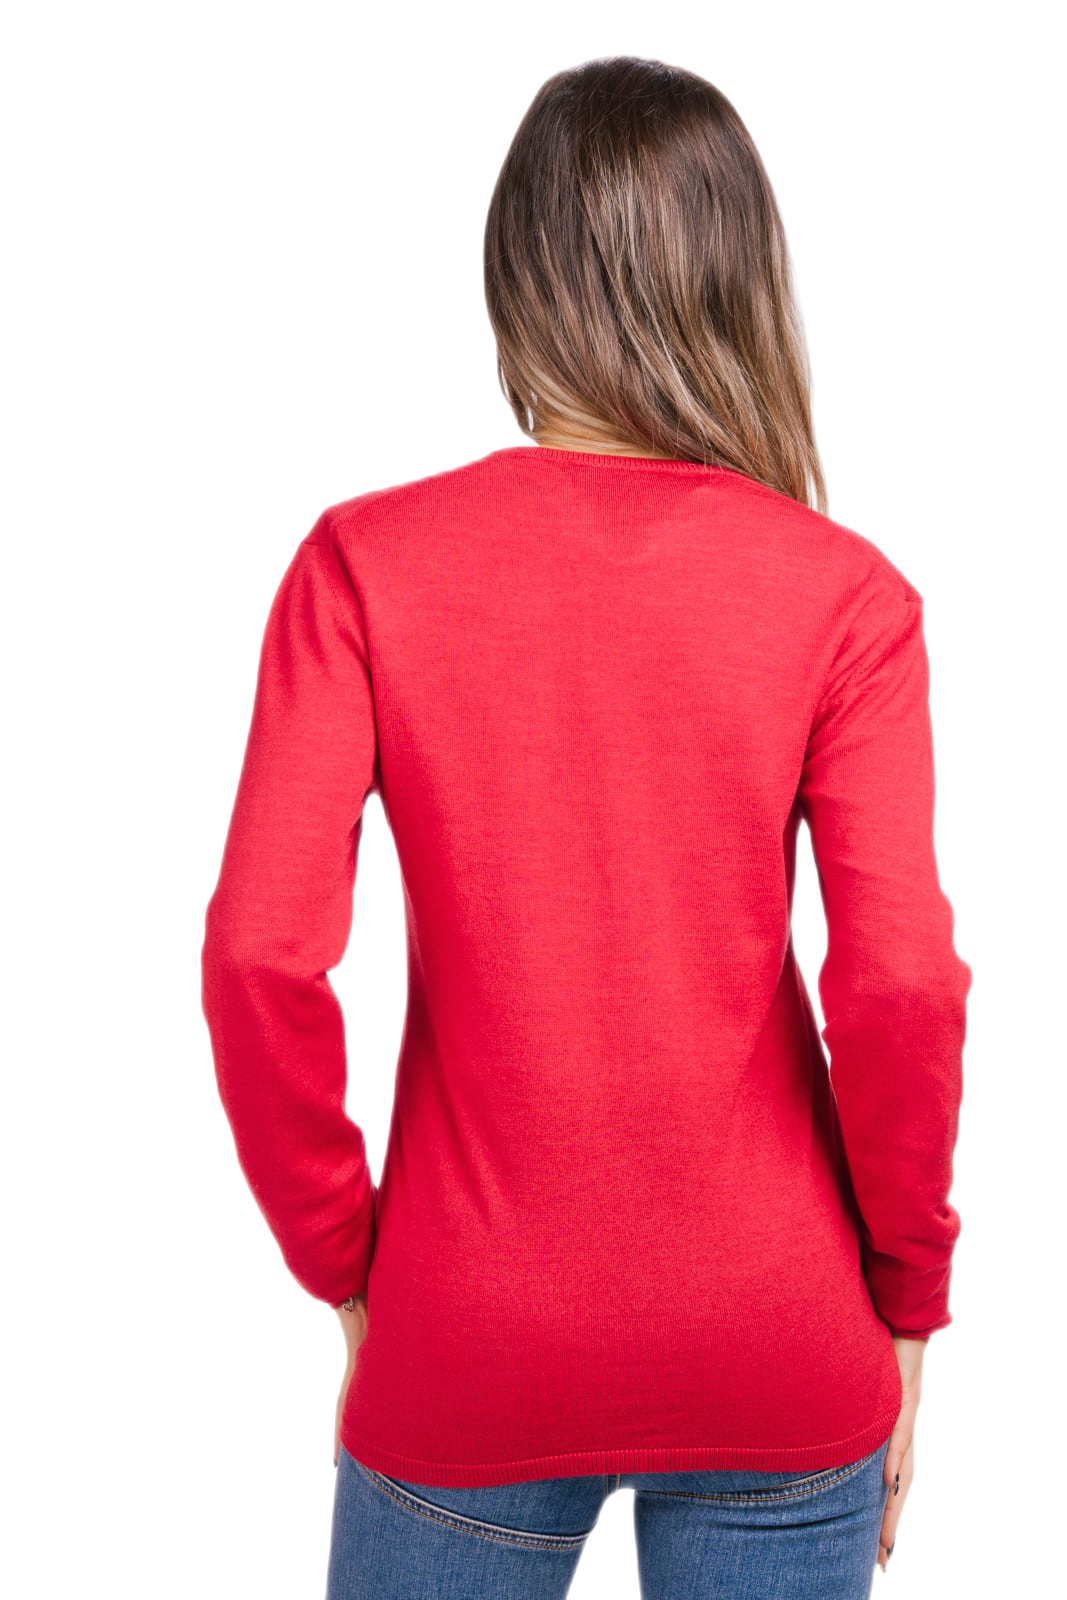 retro cardigan donna aderente in lana e seta colore rosso